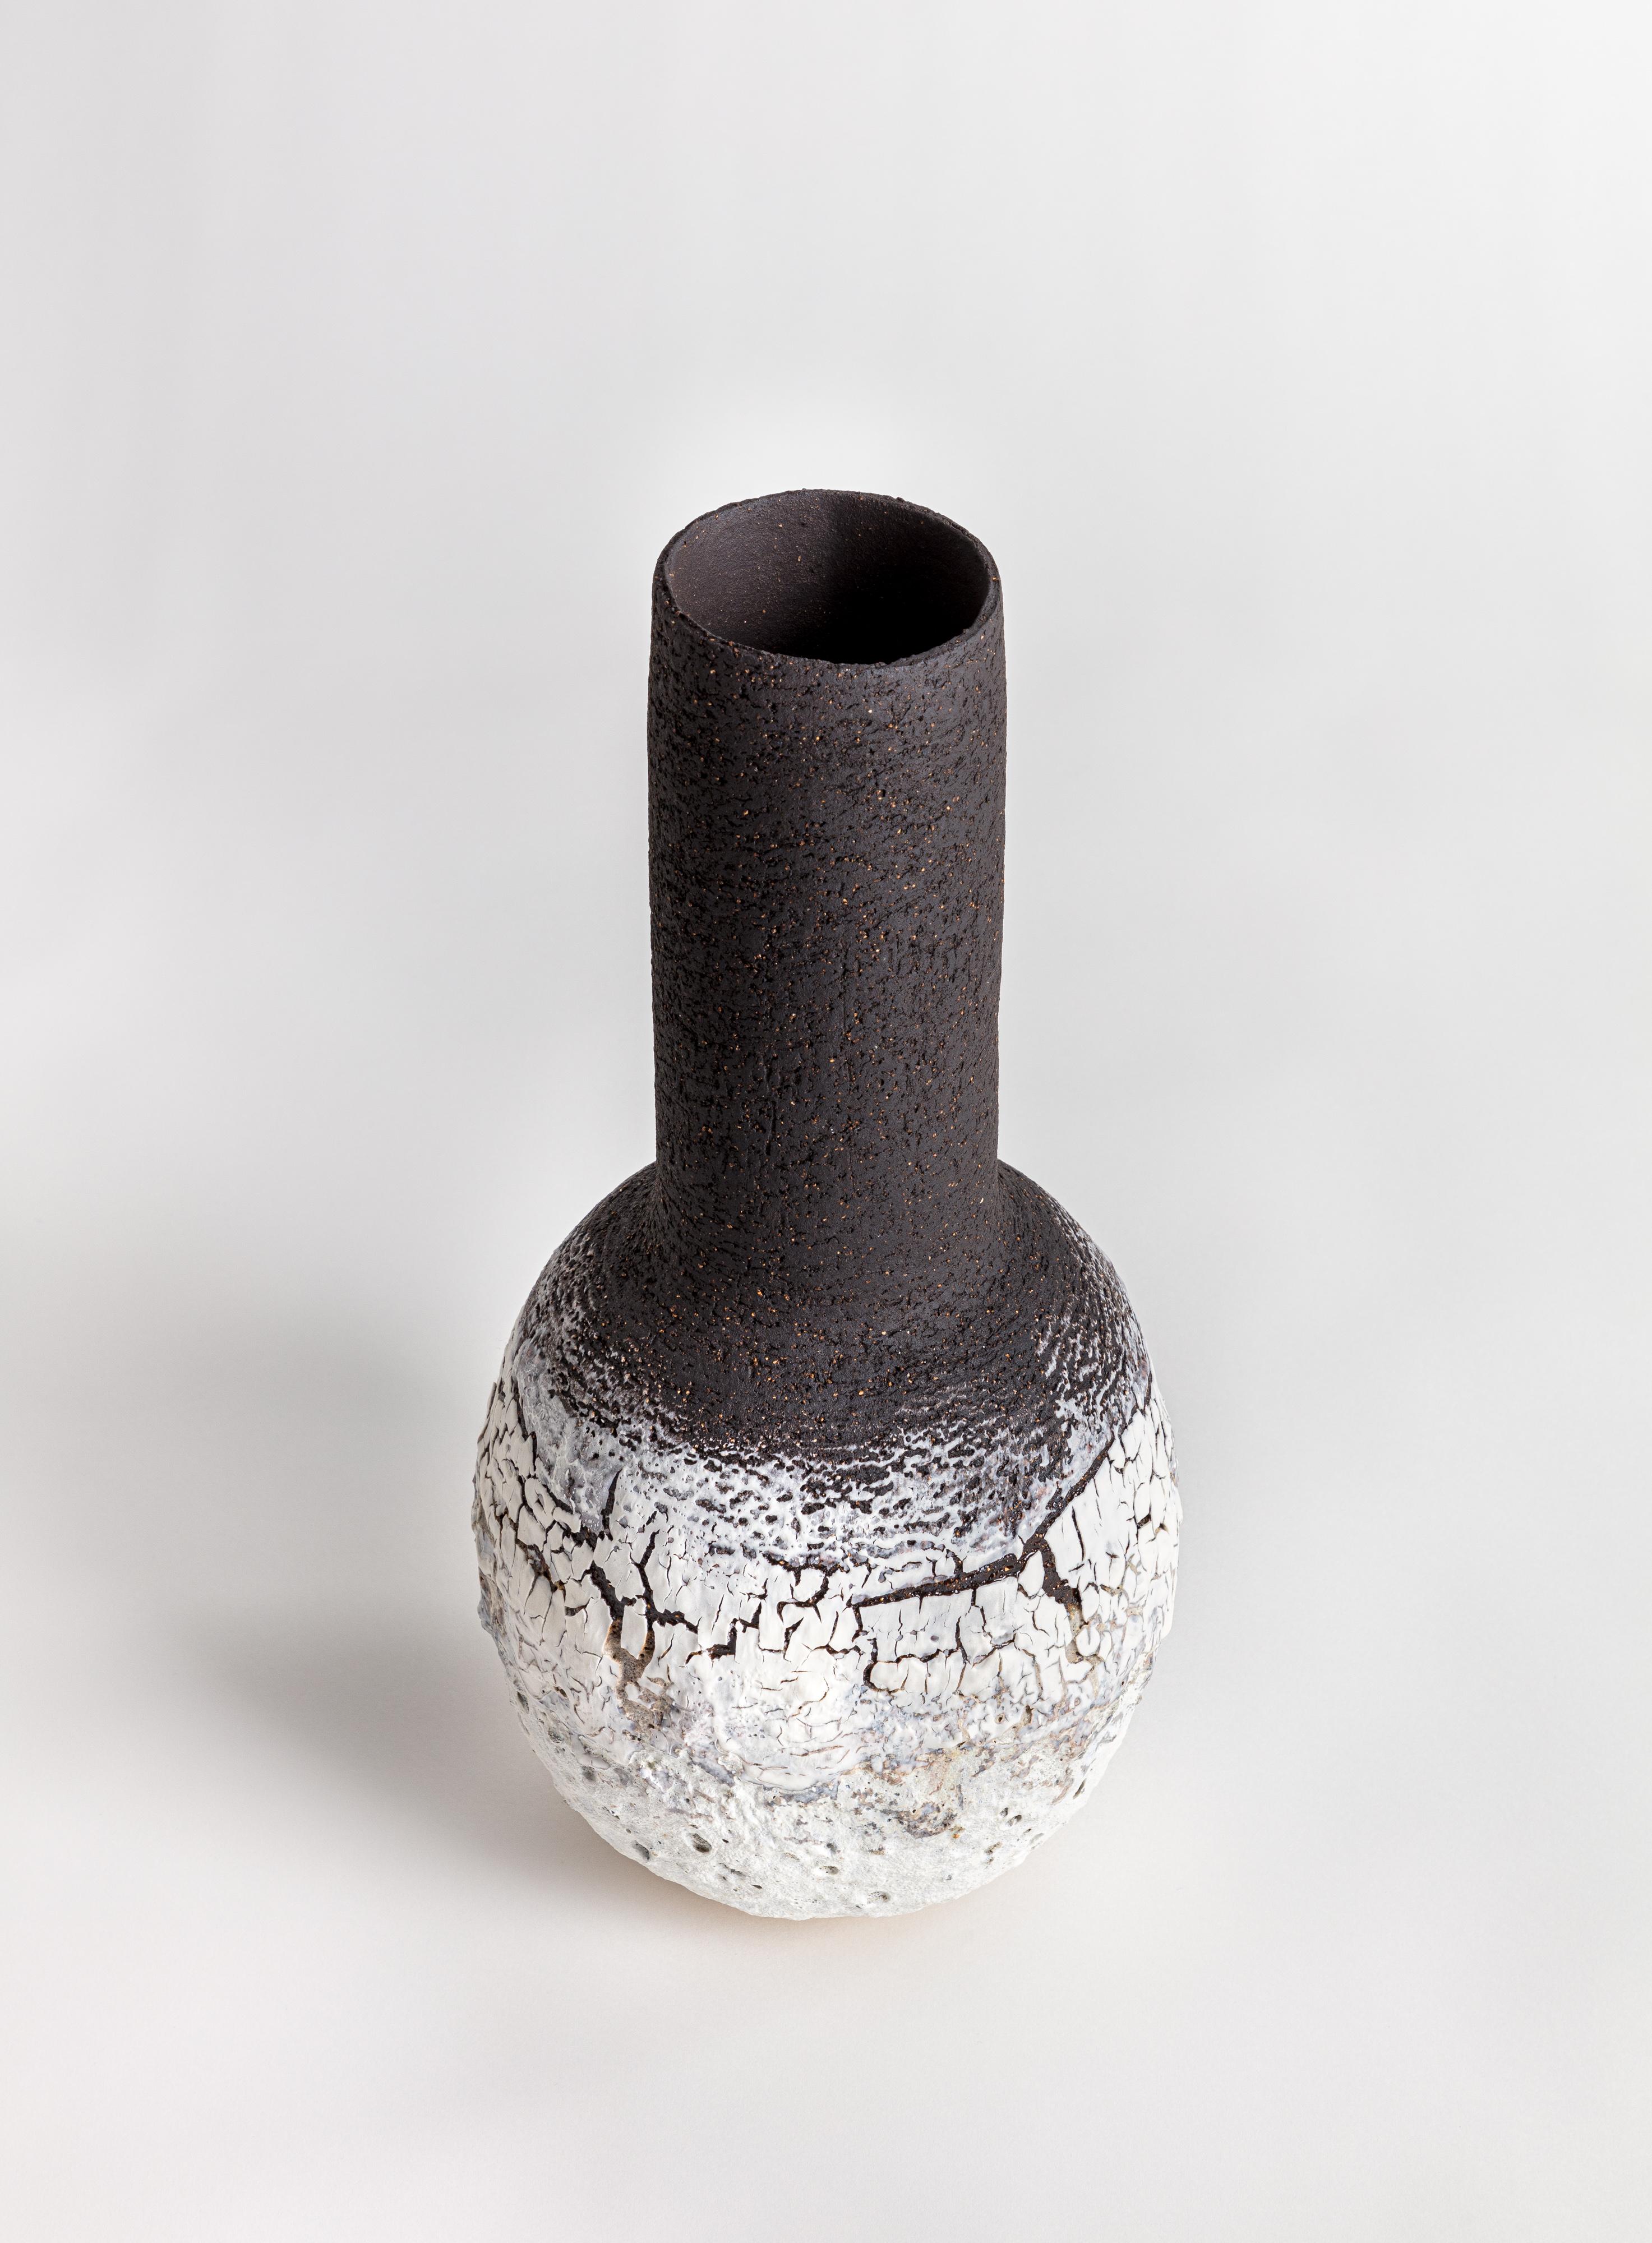 Vase en forme de bouteille en grès blanc et noir avec glaçure à texture volcanique lourde en porcelaine. Il est possible de choisir entre trois couleurs différentes pour la commande.

L'œuvre est construite à la main en utilisant une combinaison